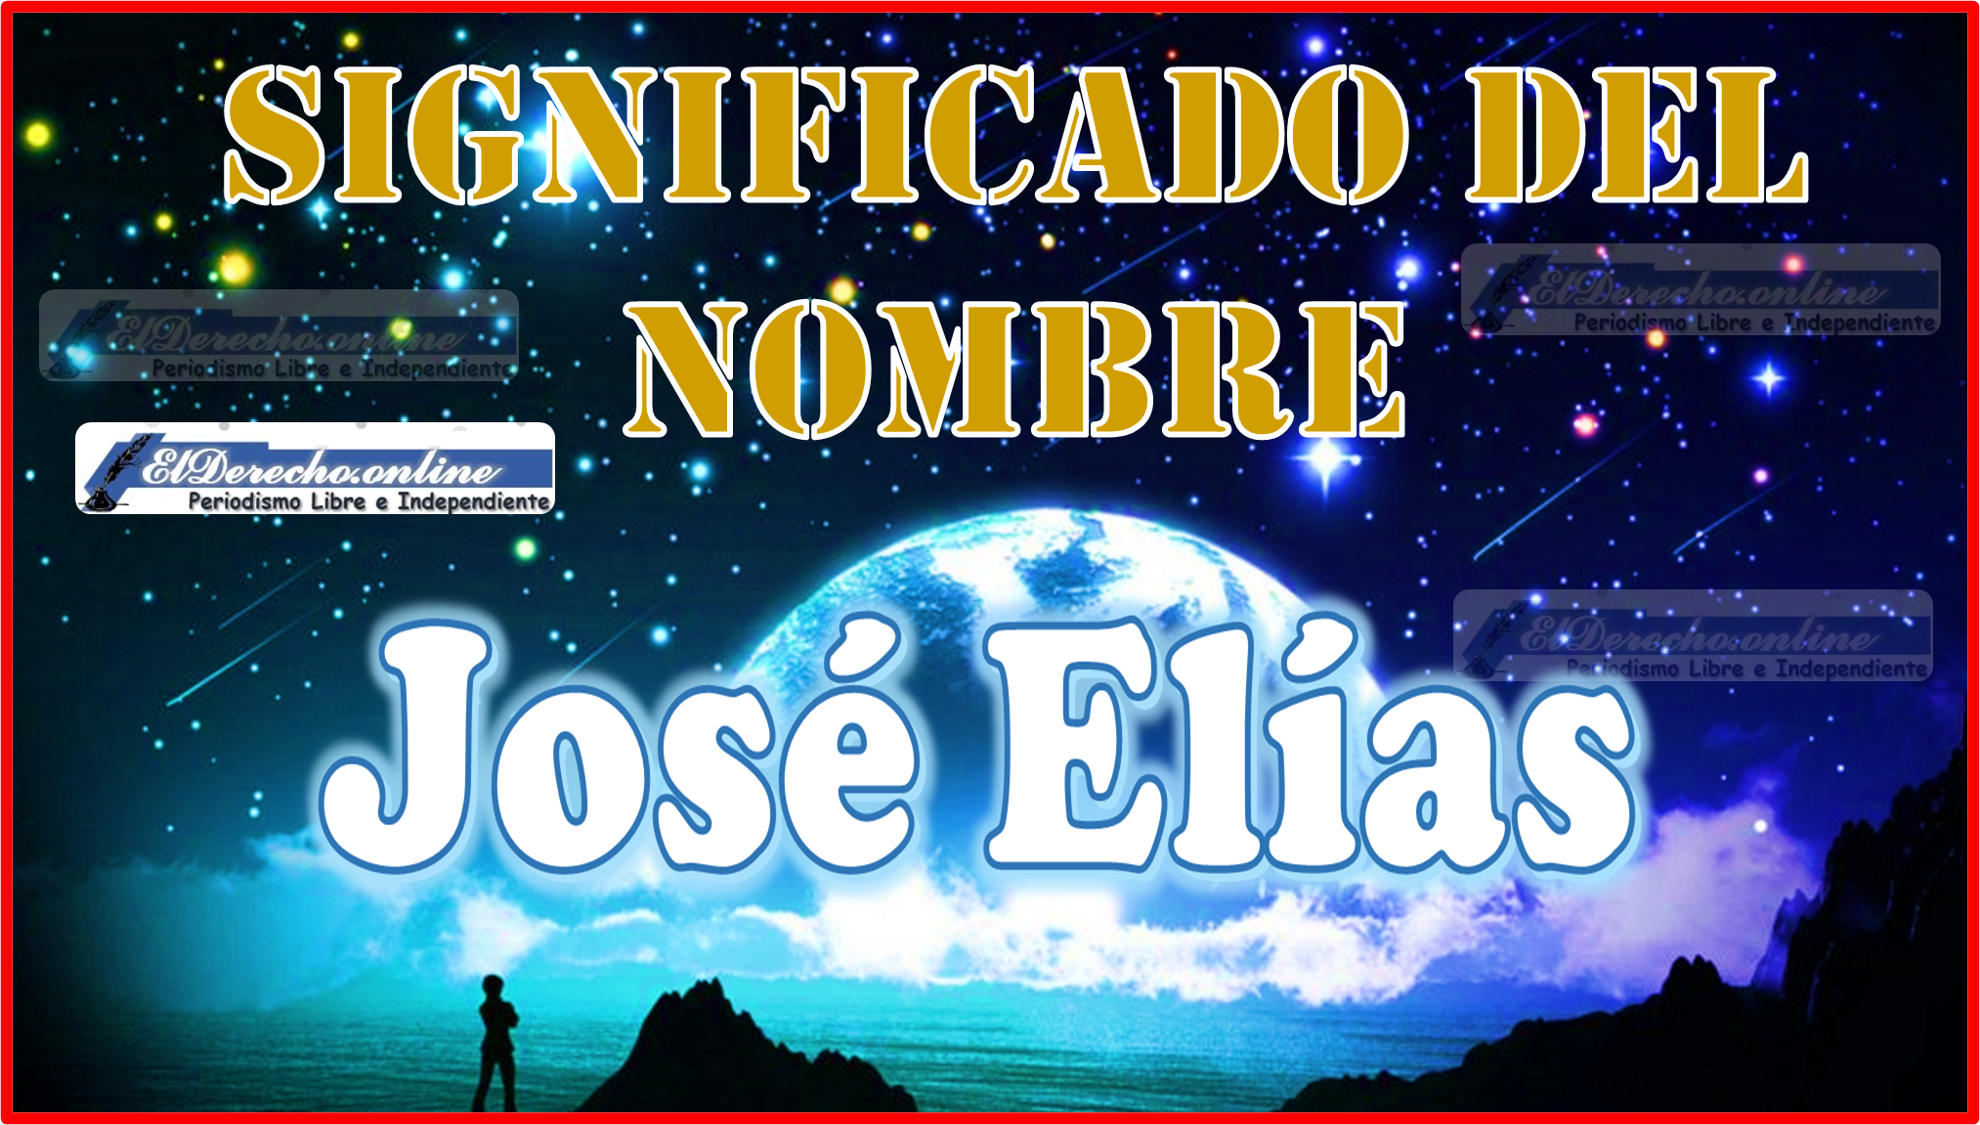 Significado del nombre José Elías, su origen y más